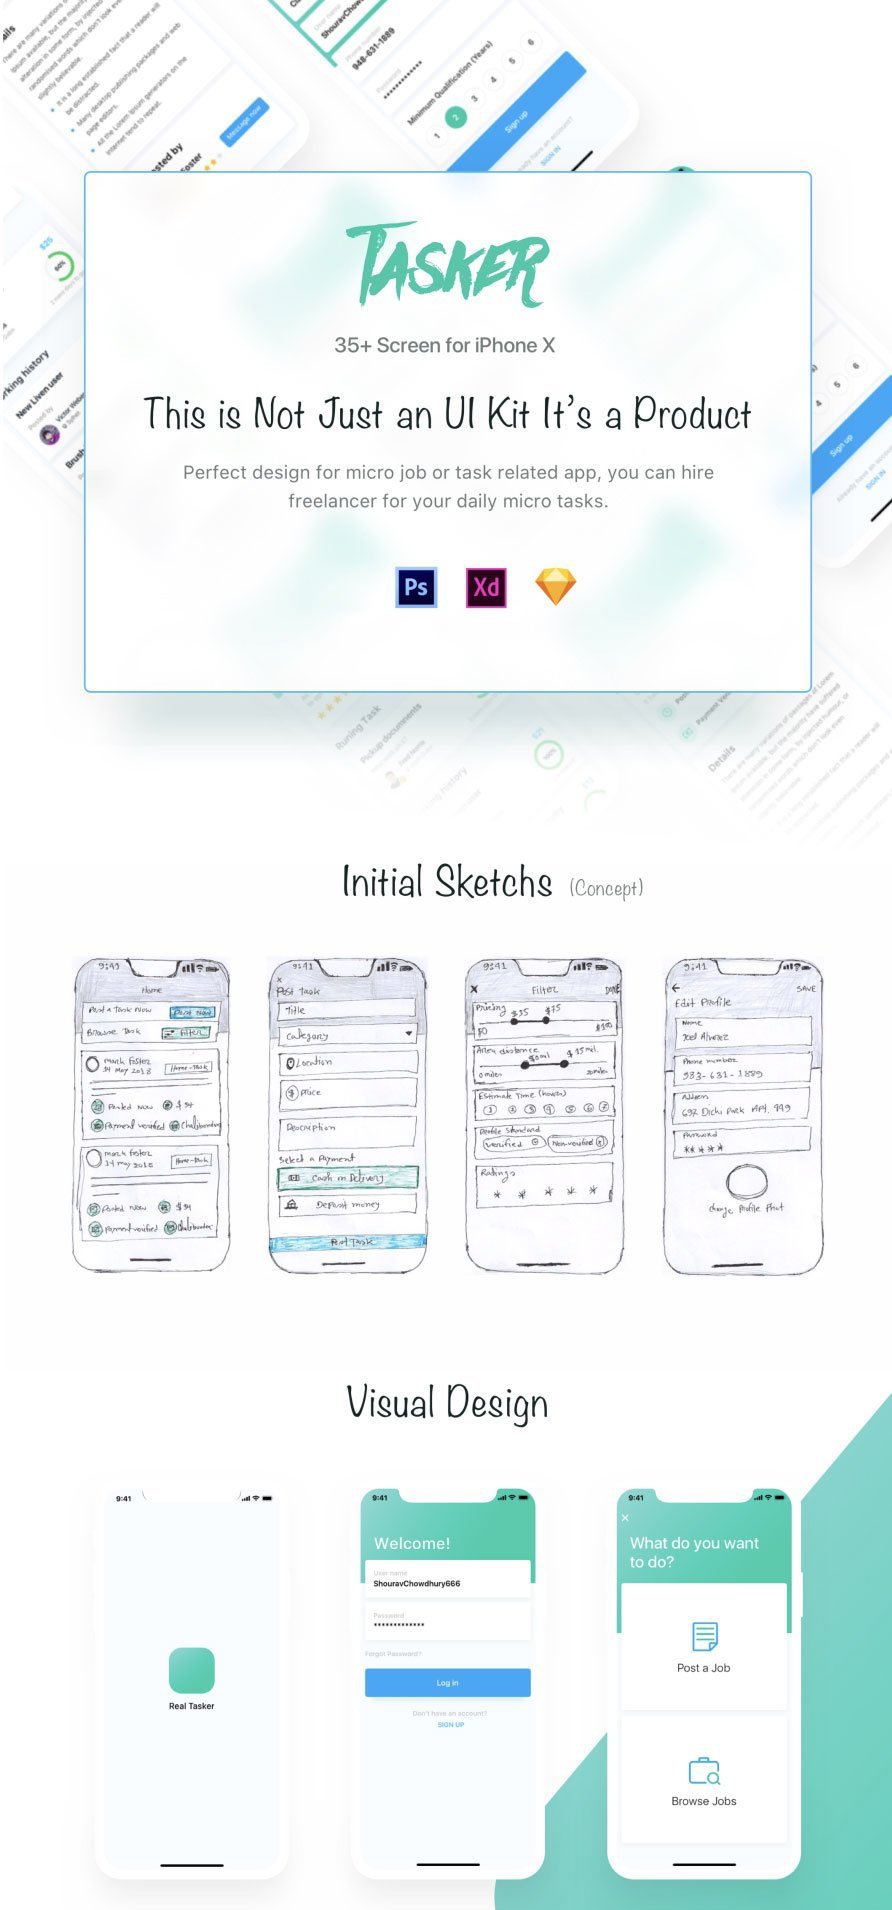 手机移动端用户中心登录页面空间管理社交媒体UI界面设计素材